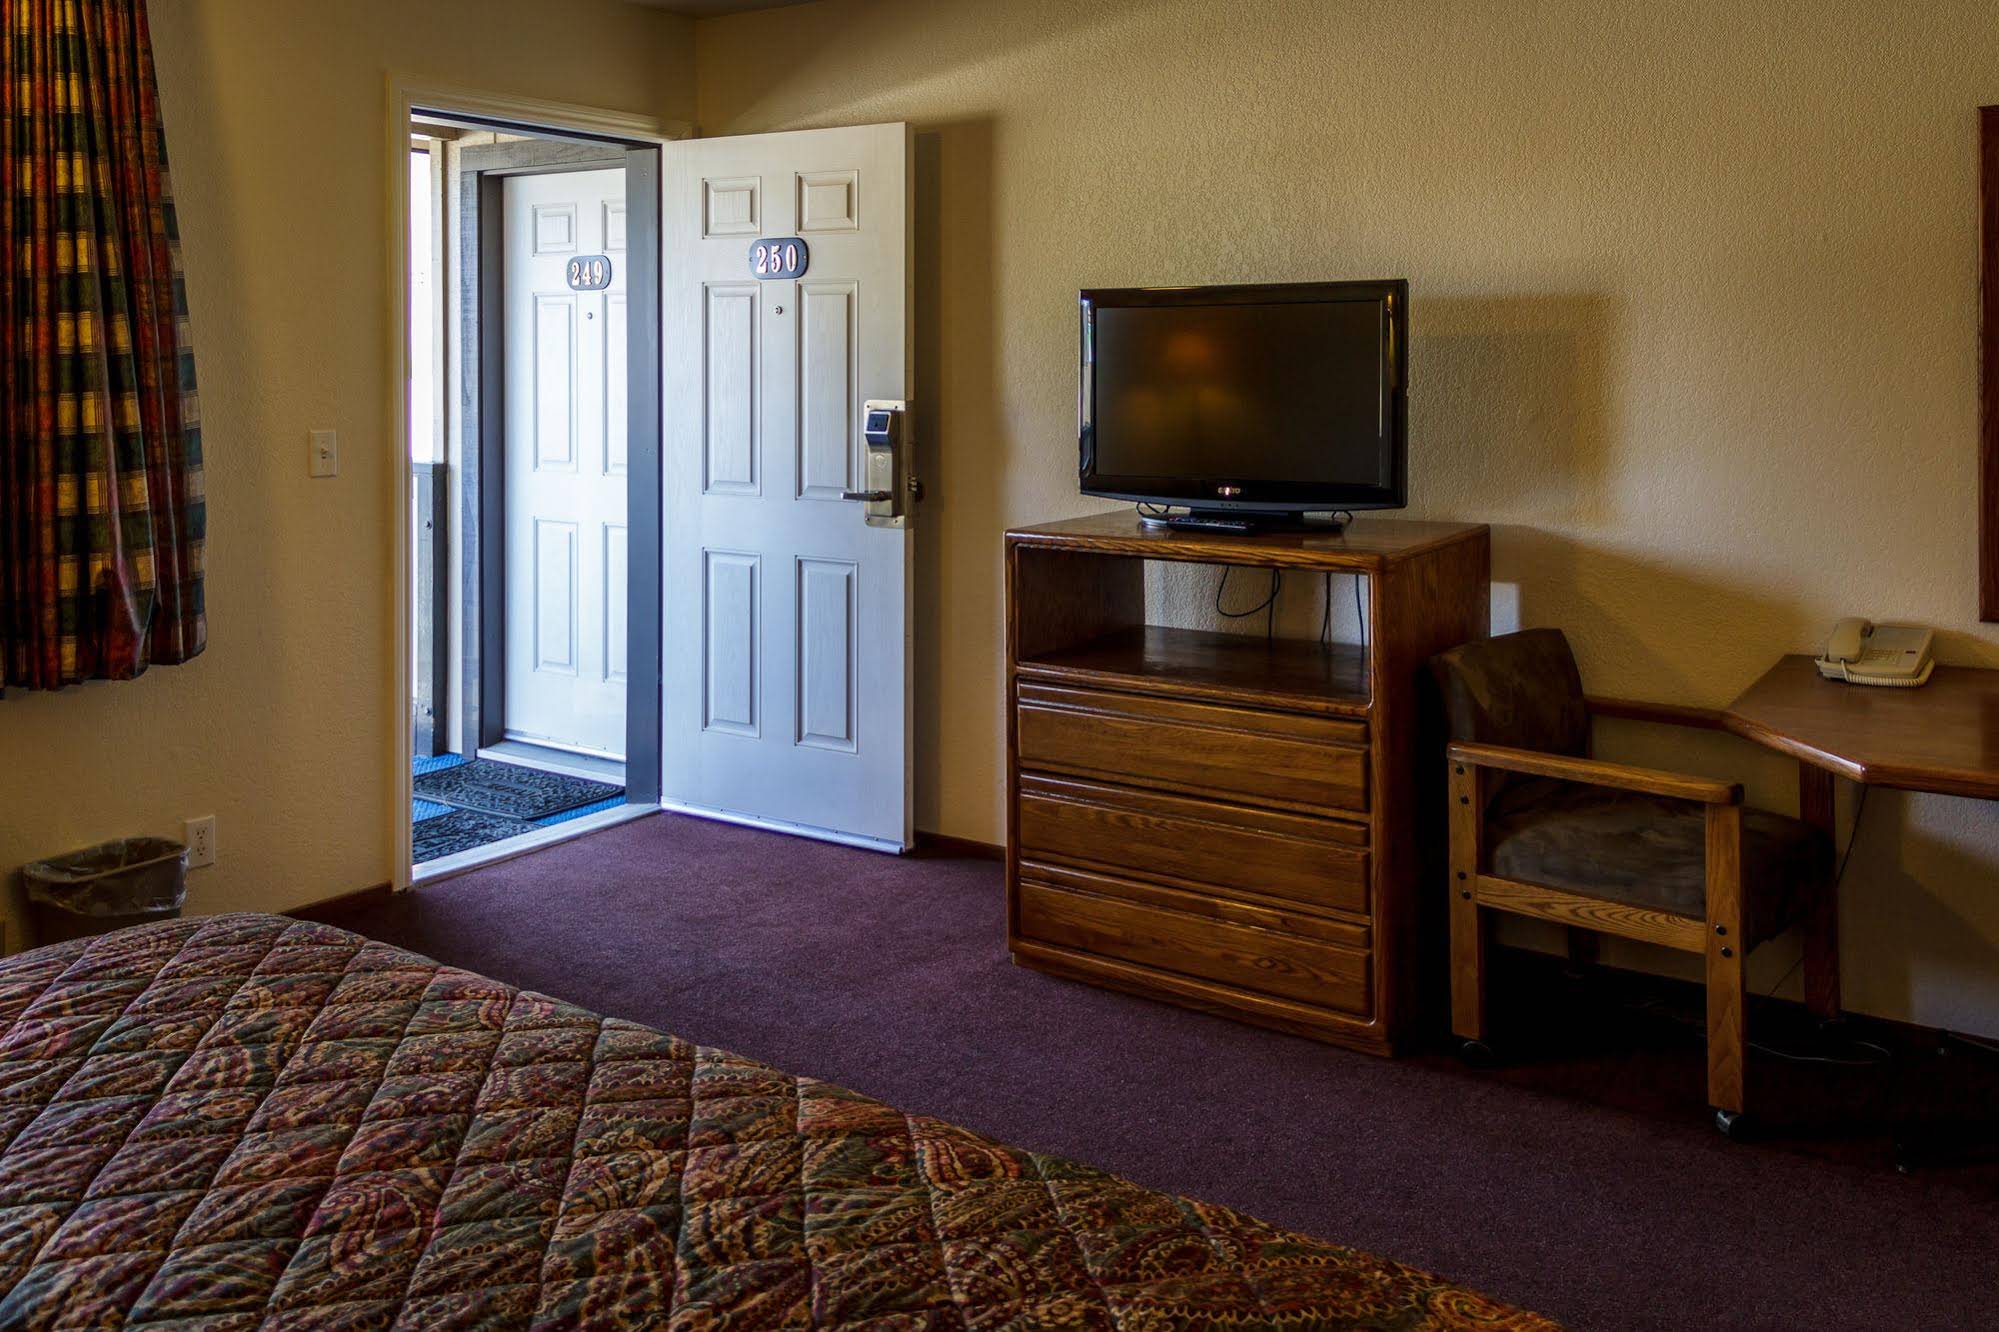 Charm Motel & Suites